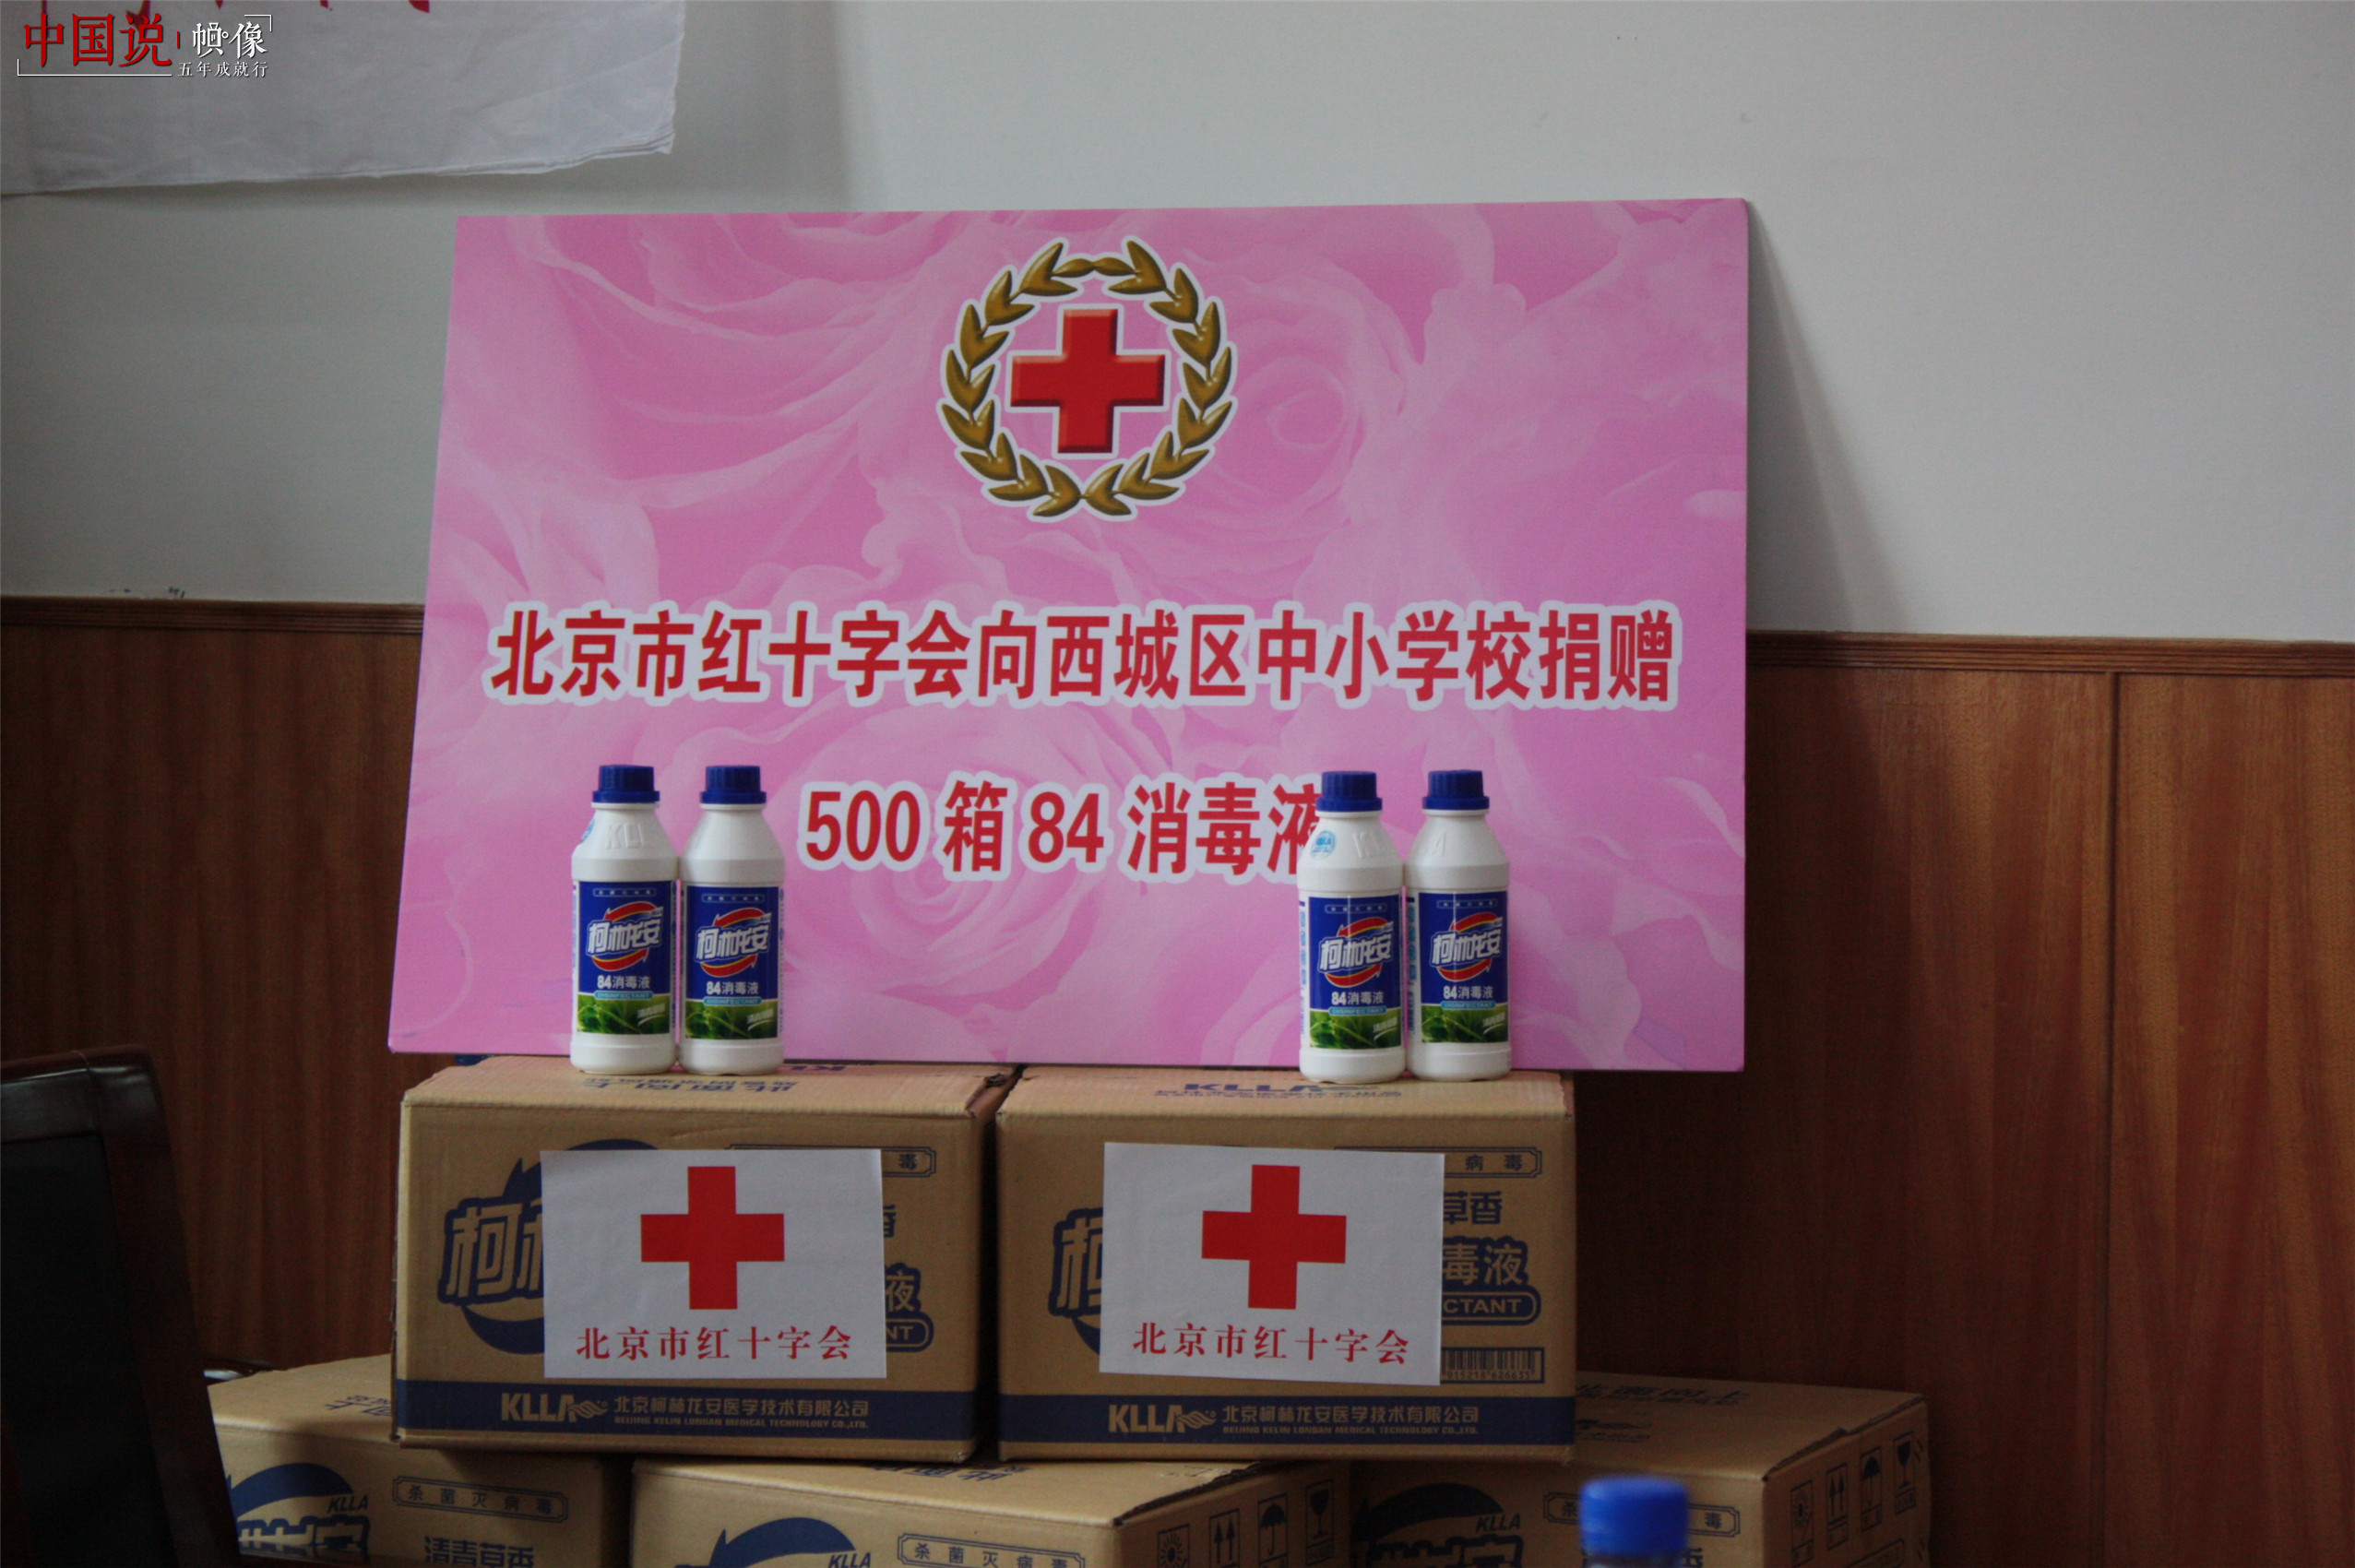  2009年9月10日，甲型流感期间，北京市红十字会向西城区中小学生赠送消毒液。（西城区红十字会供图）